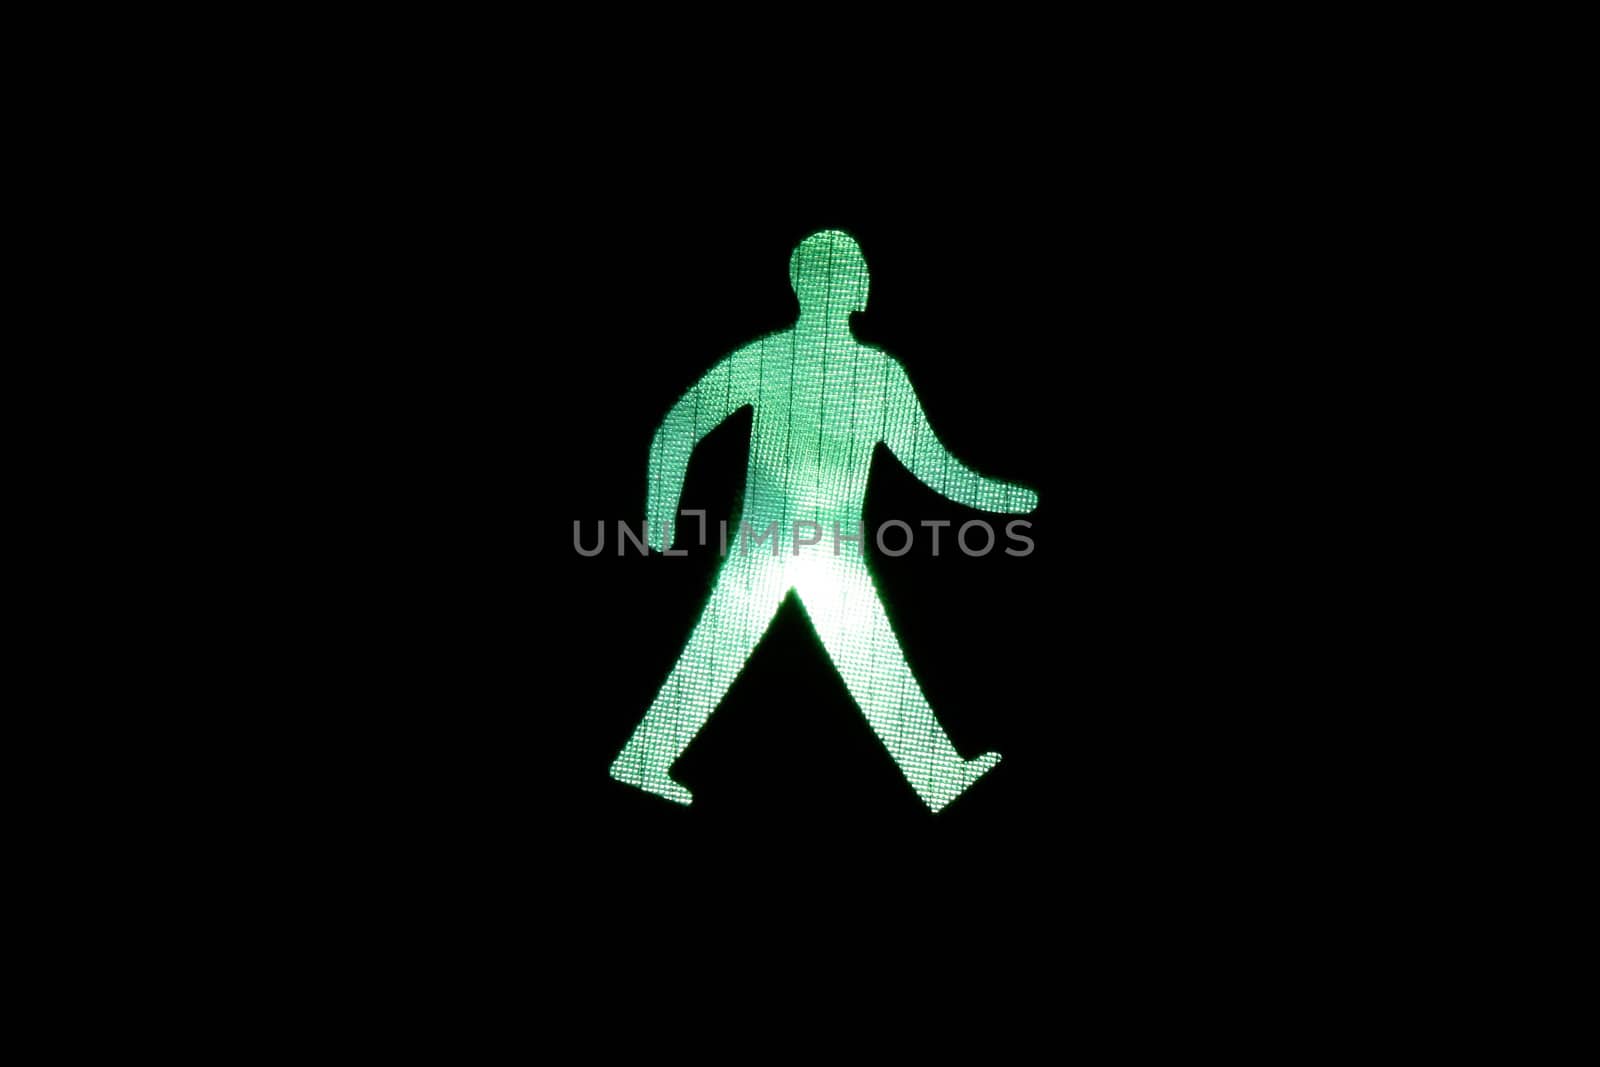 Green man walking